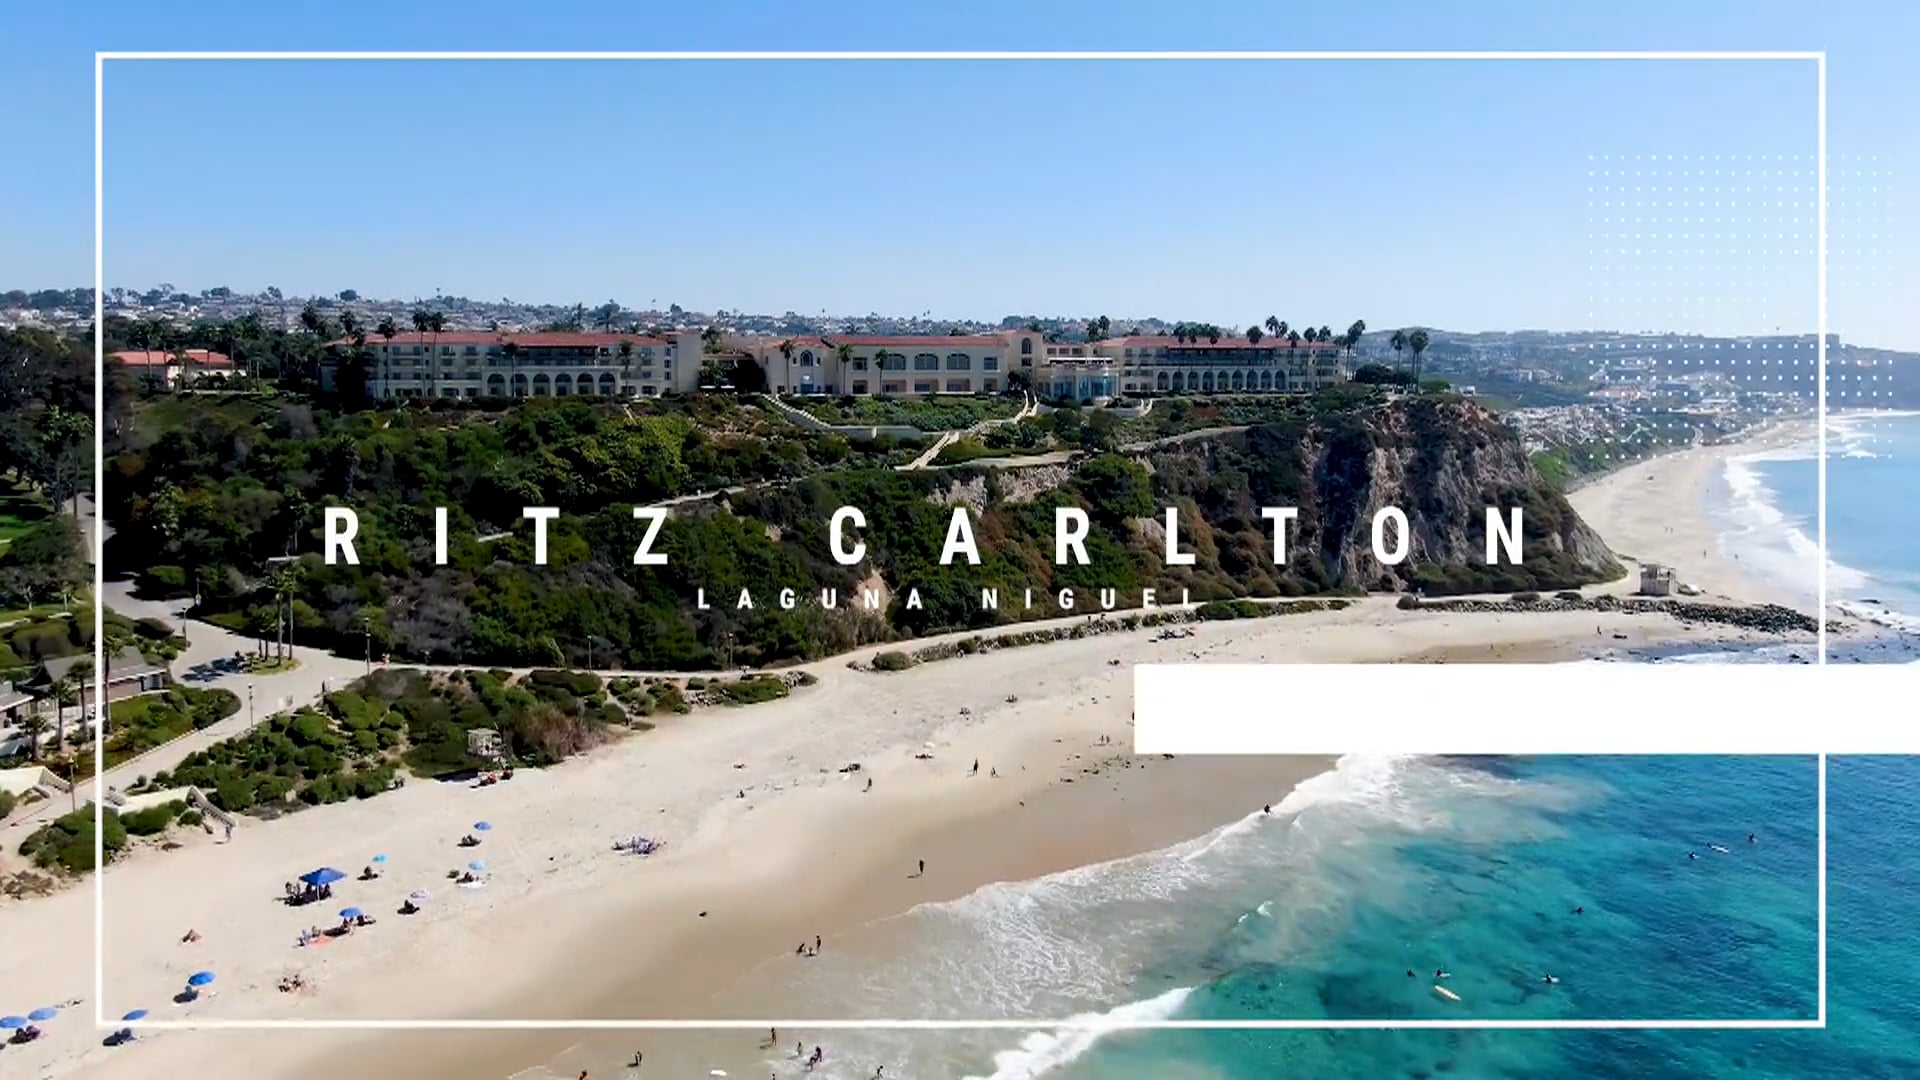 Ritz-Carlton Laguna Niguel Staycation